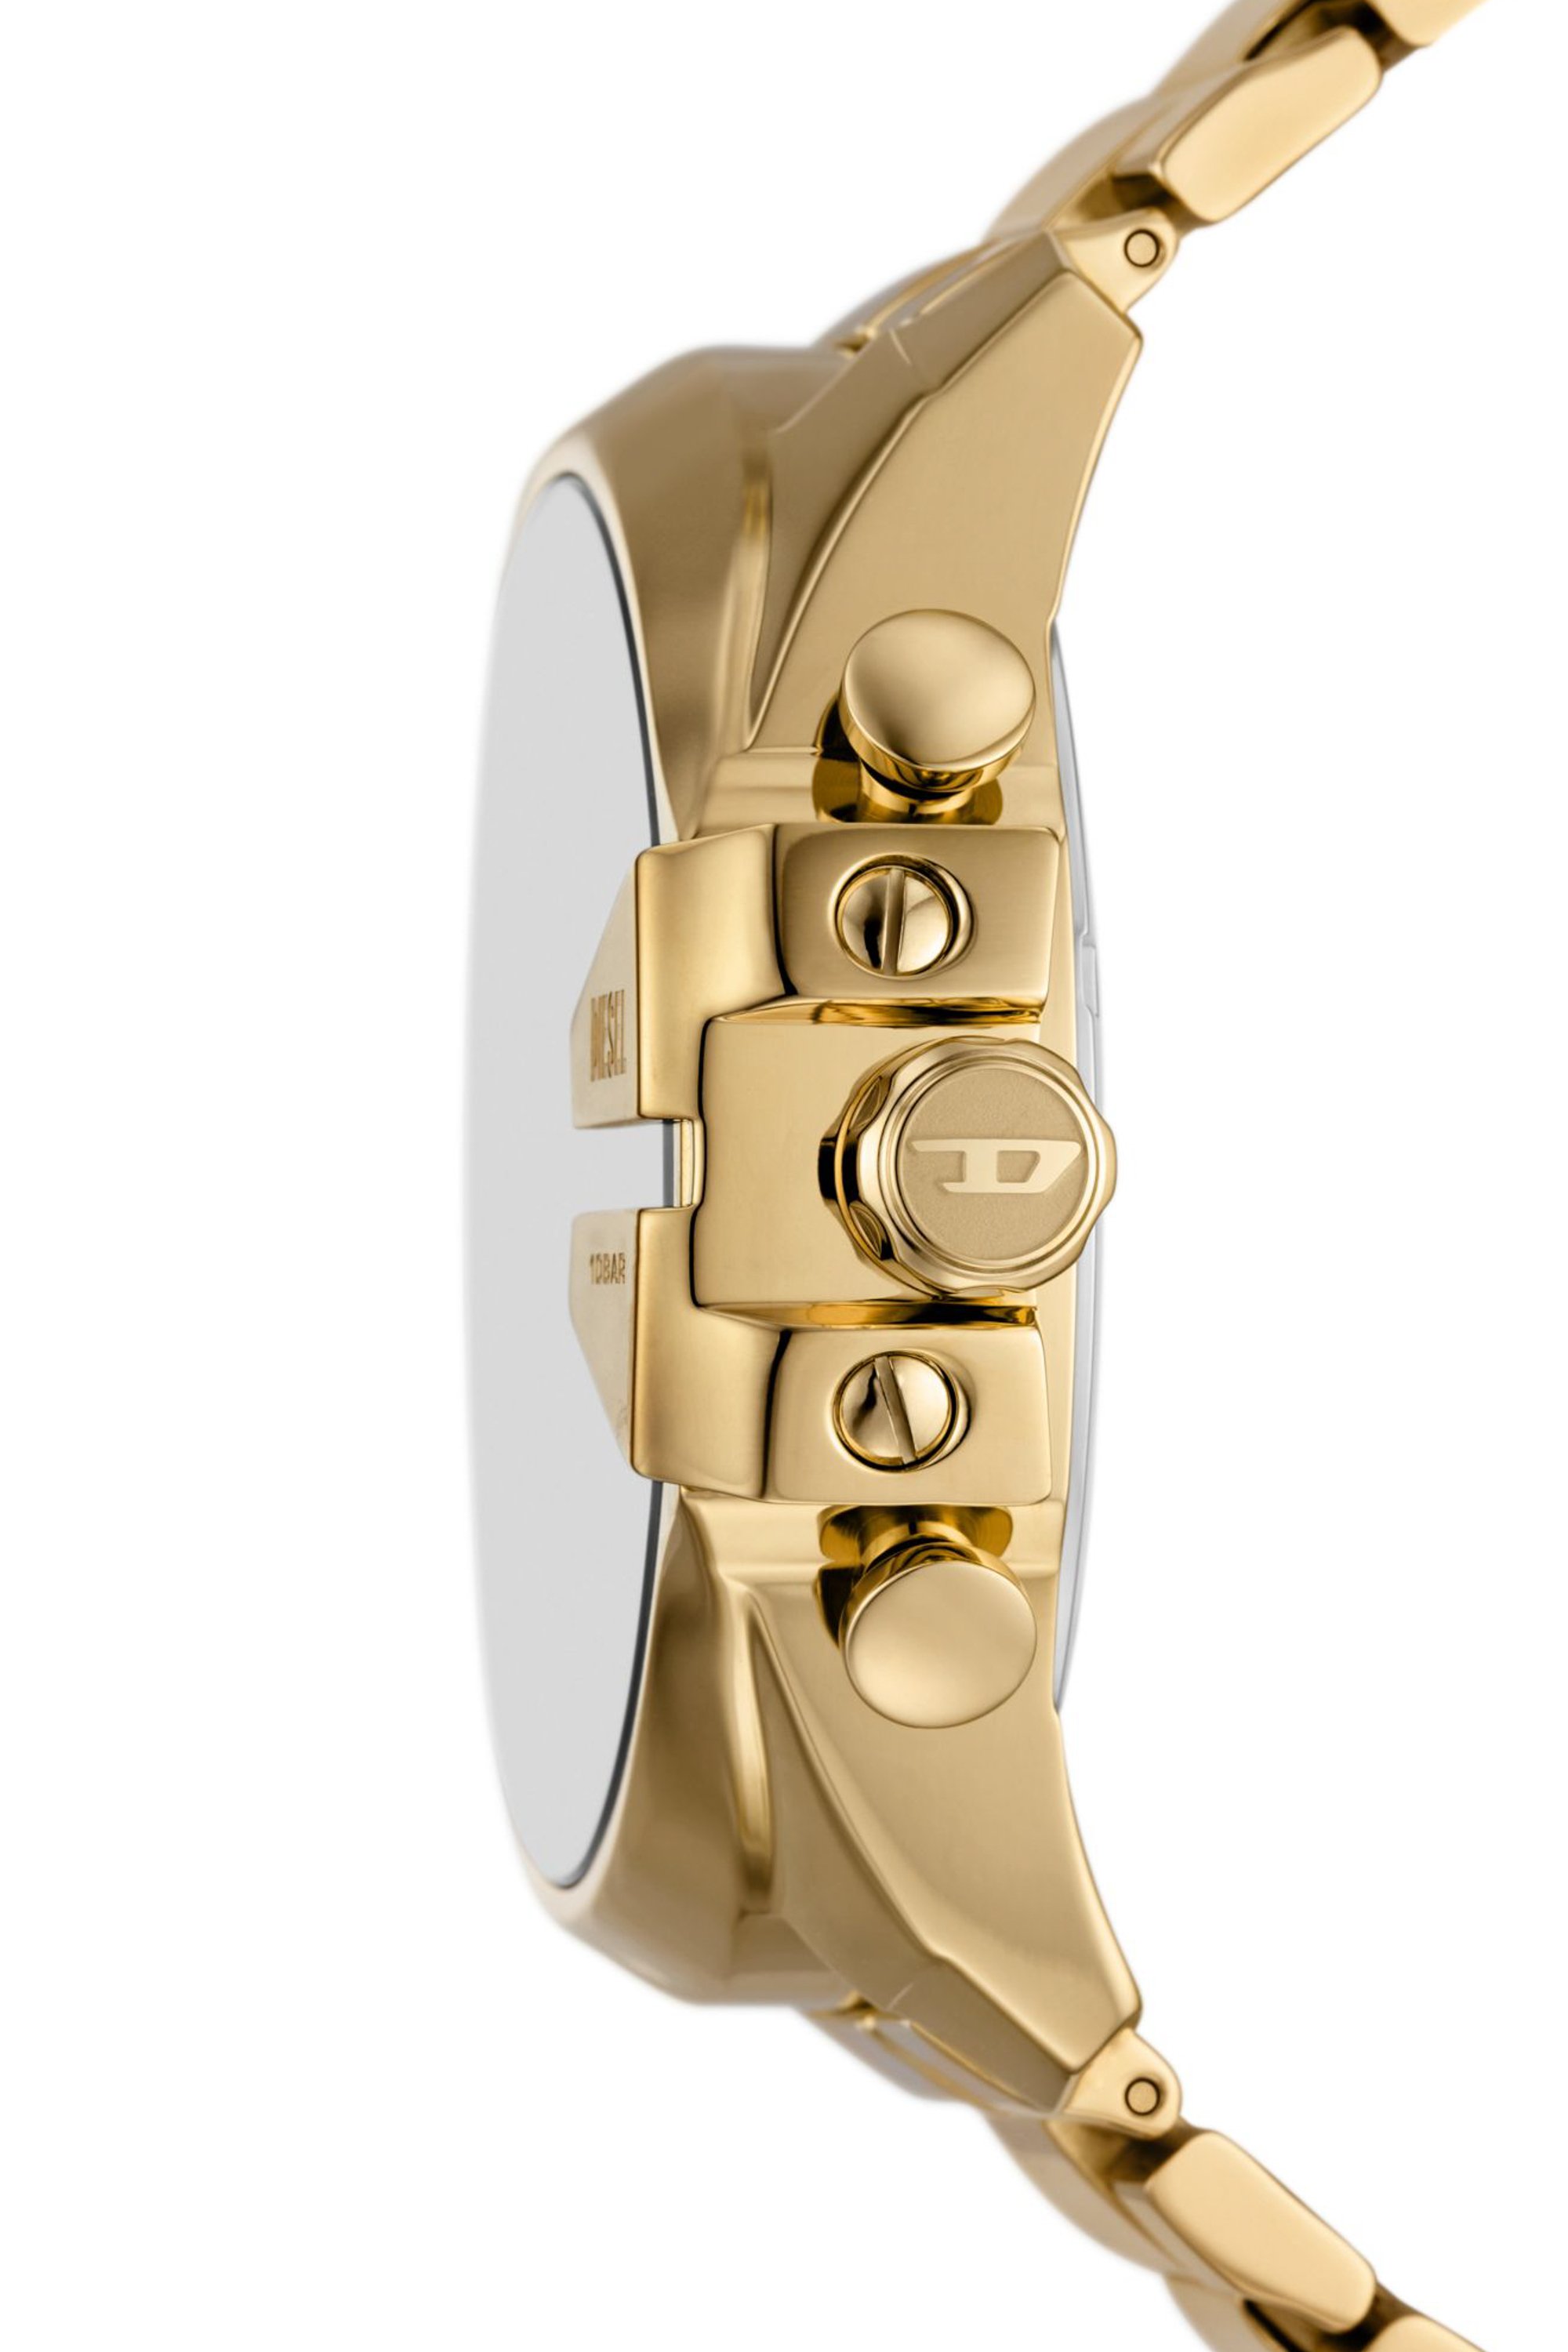 Diesel - DZ4662, Hombre Reloj Mega Chief de acero inoxidable en tono dorado con cronógrafo in Dorado - Image 3